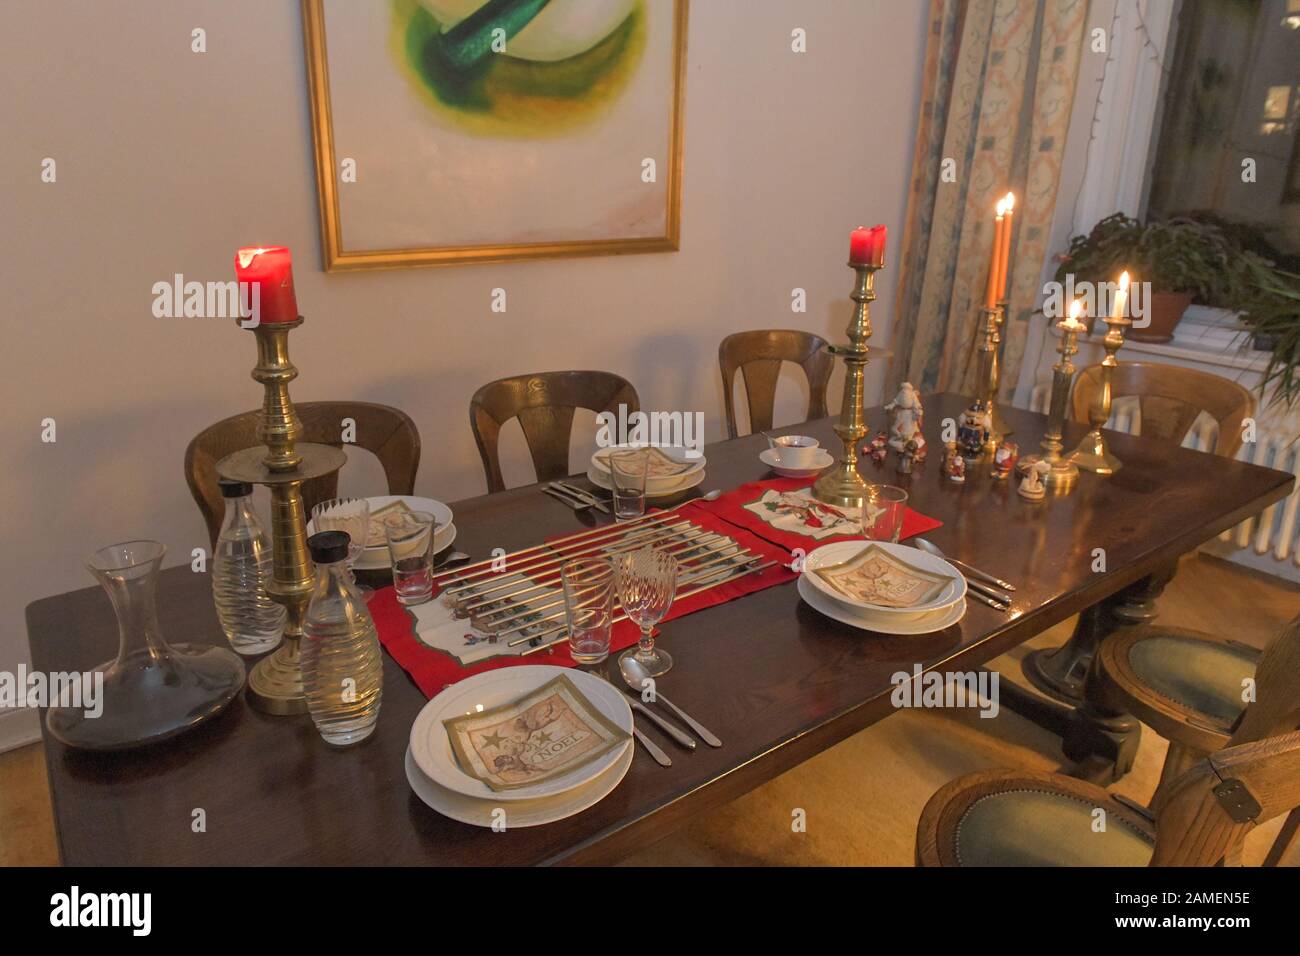 Gedeckter Tisch mit Essen, Tischdecke, Teller, Porzellan Stock Photo